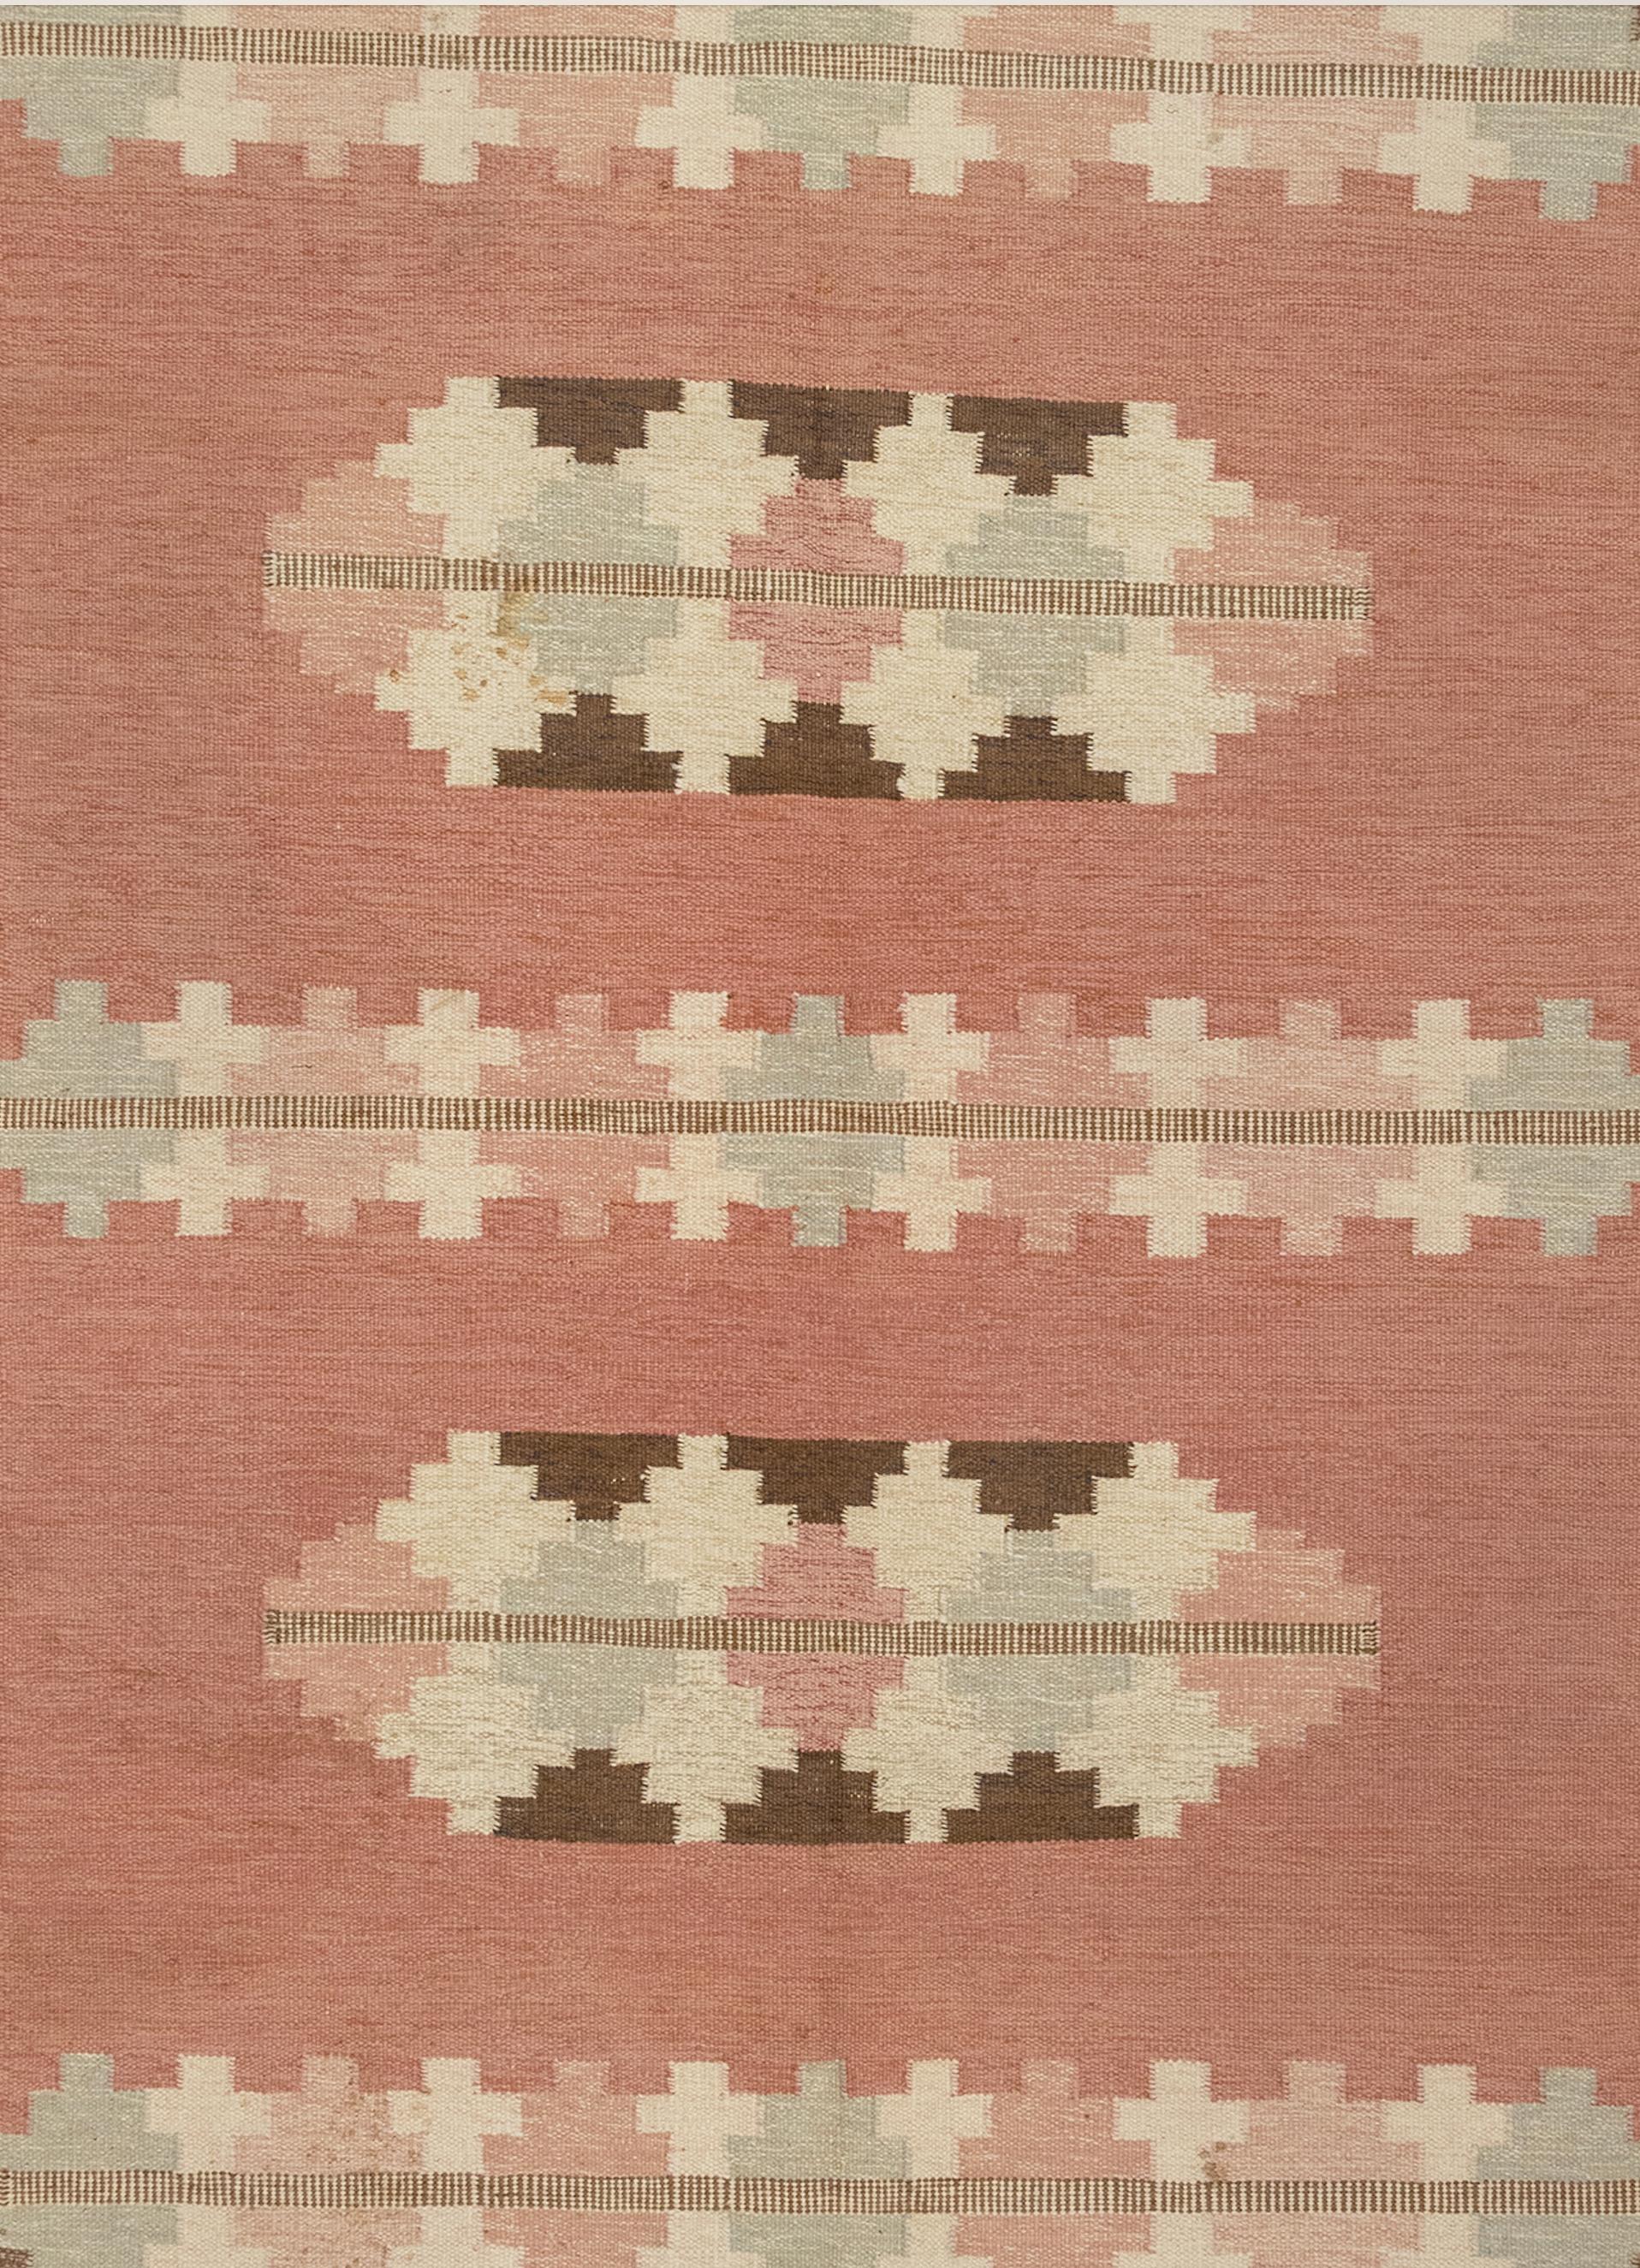 Dies ist ein skandinavischer Flachgewebe-Teppich aus der Mitte des 20. Jahrhunderts. Es ist vom Designer signiert. Die Farbpalette besteht aus sanften Rosa-, Eisblau-, Elfenbein- und Brauntönen in komplementären geometrischen Formen, die sich in